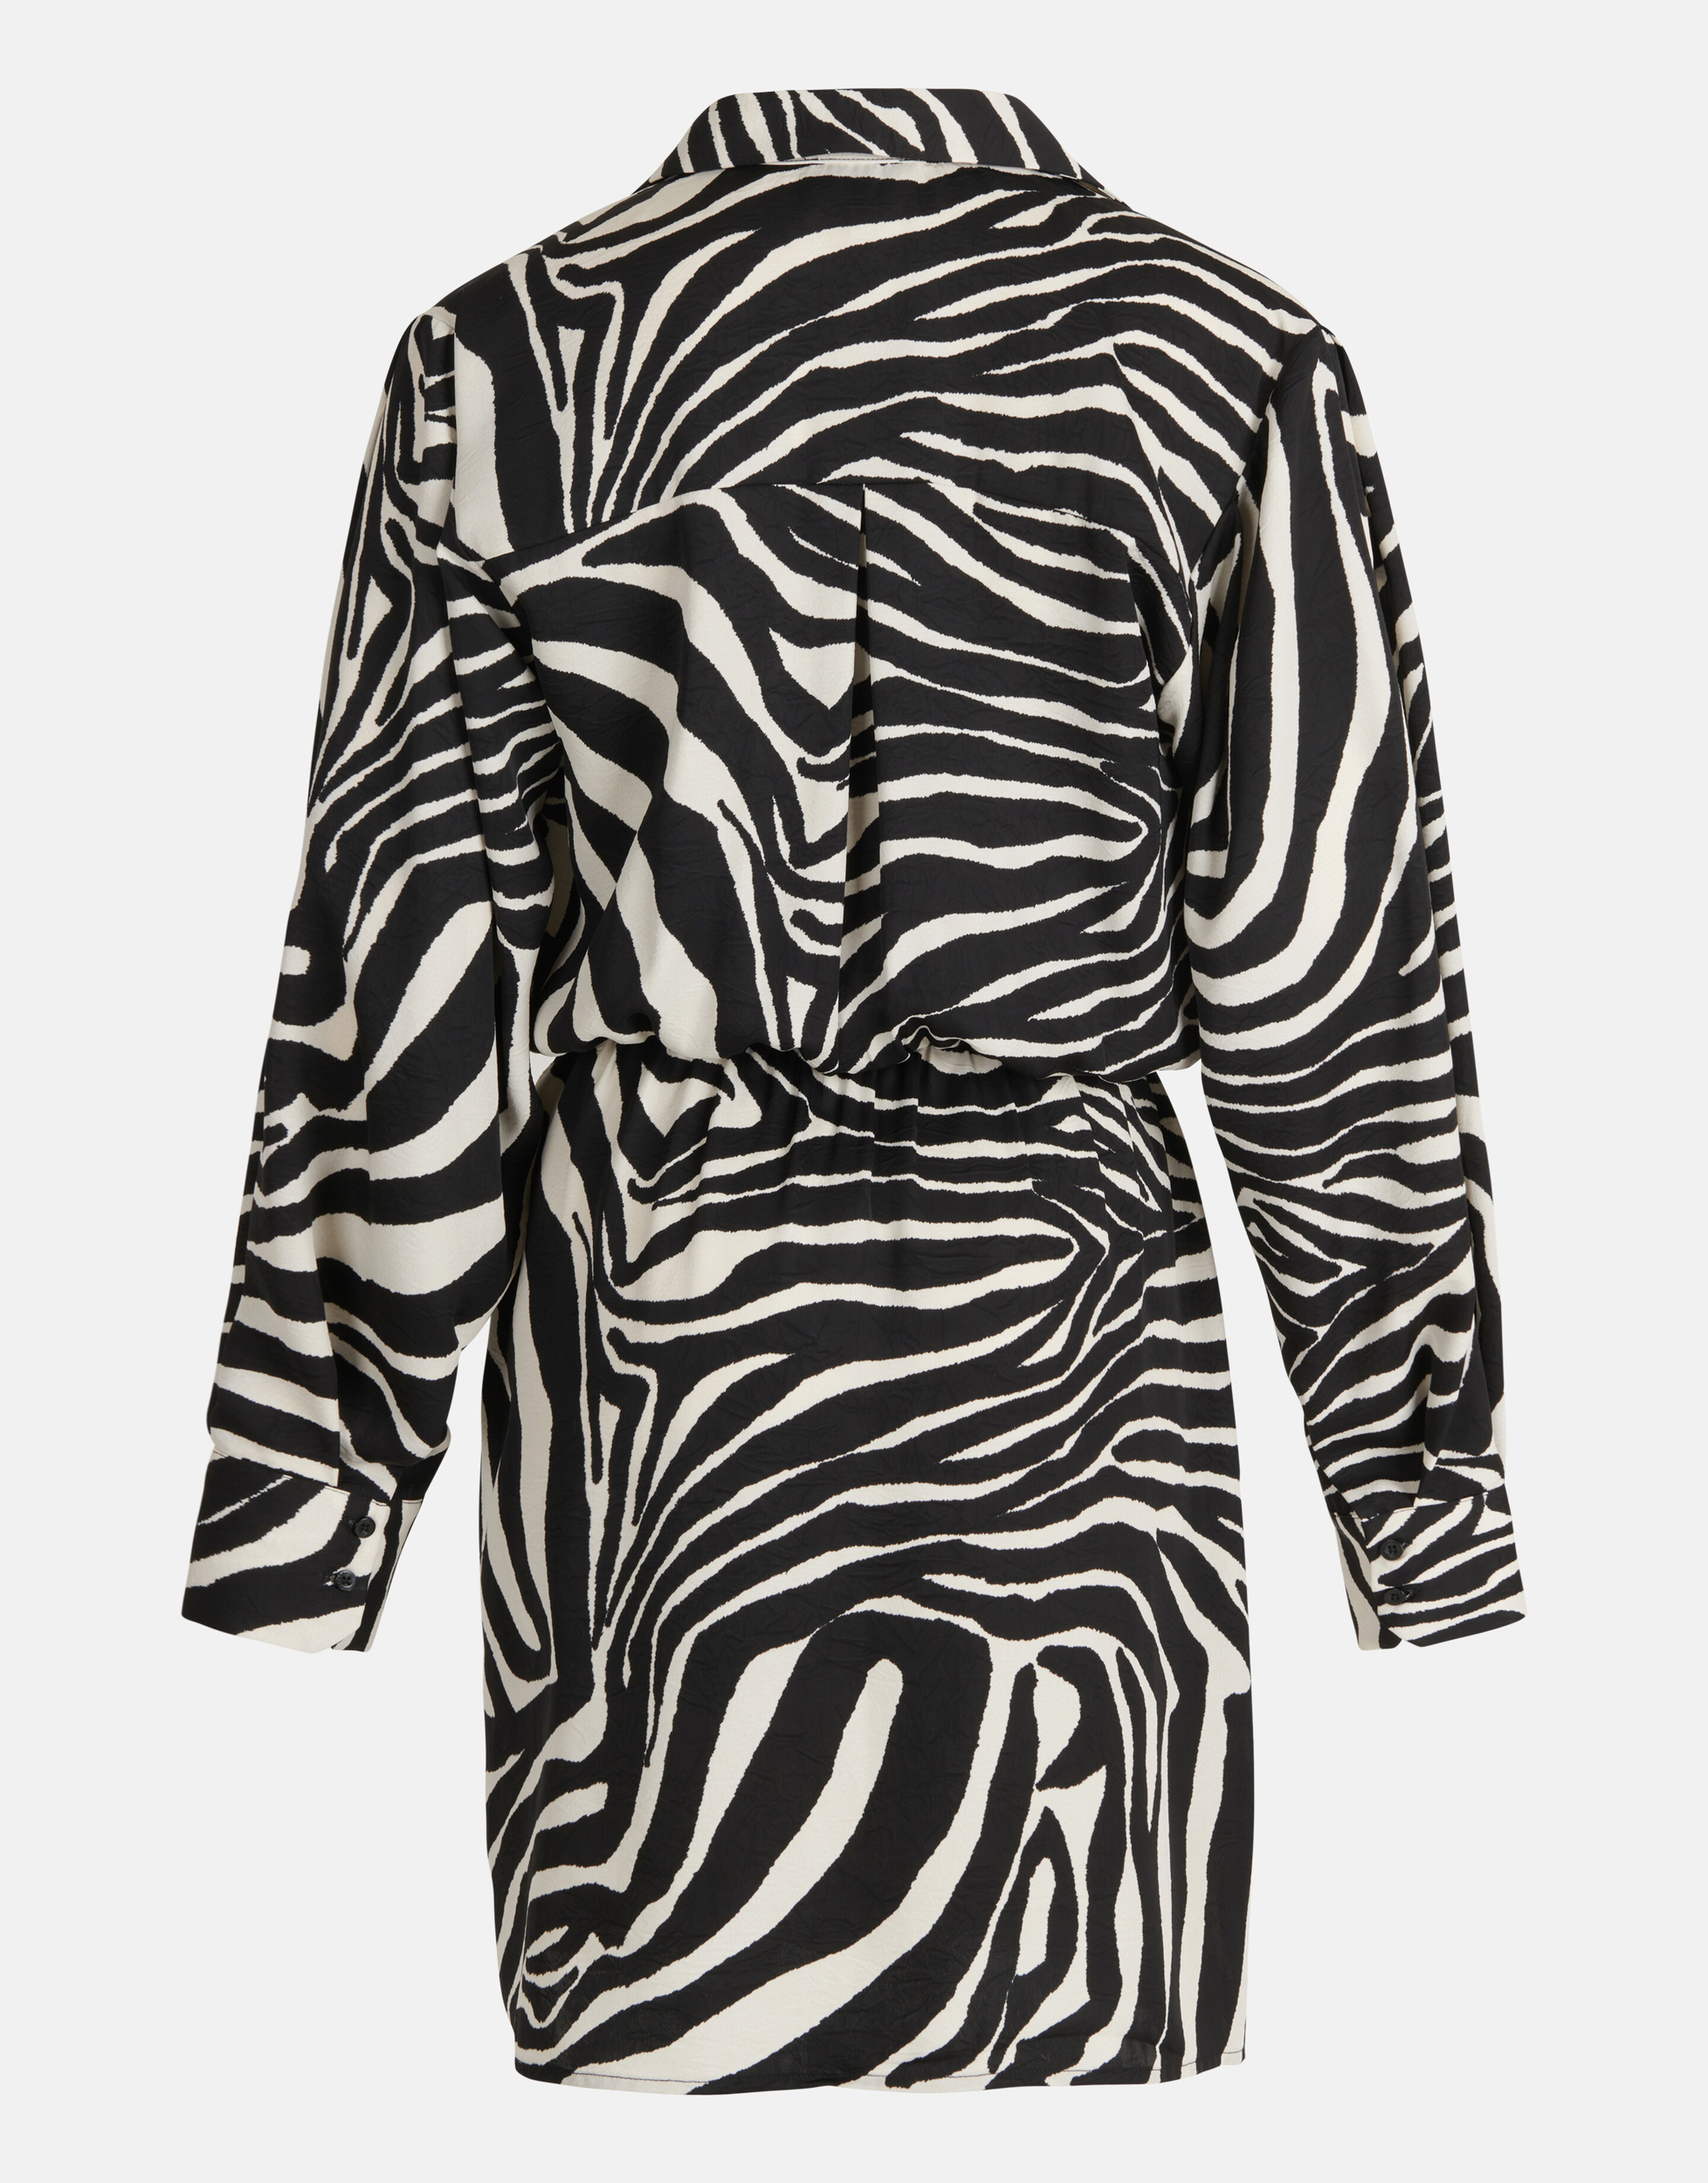 Kleid mit Zebramuster Schwarz/Weiß SHOEBY WOMEN